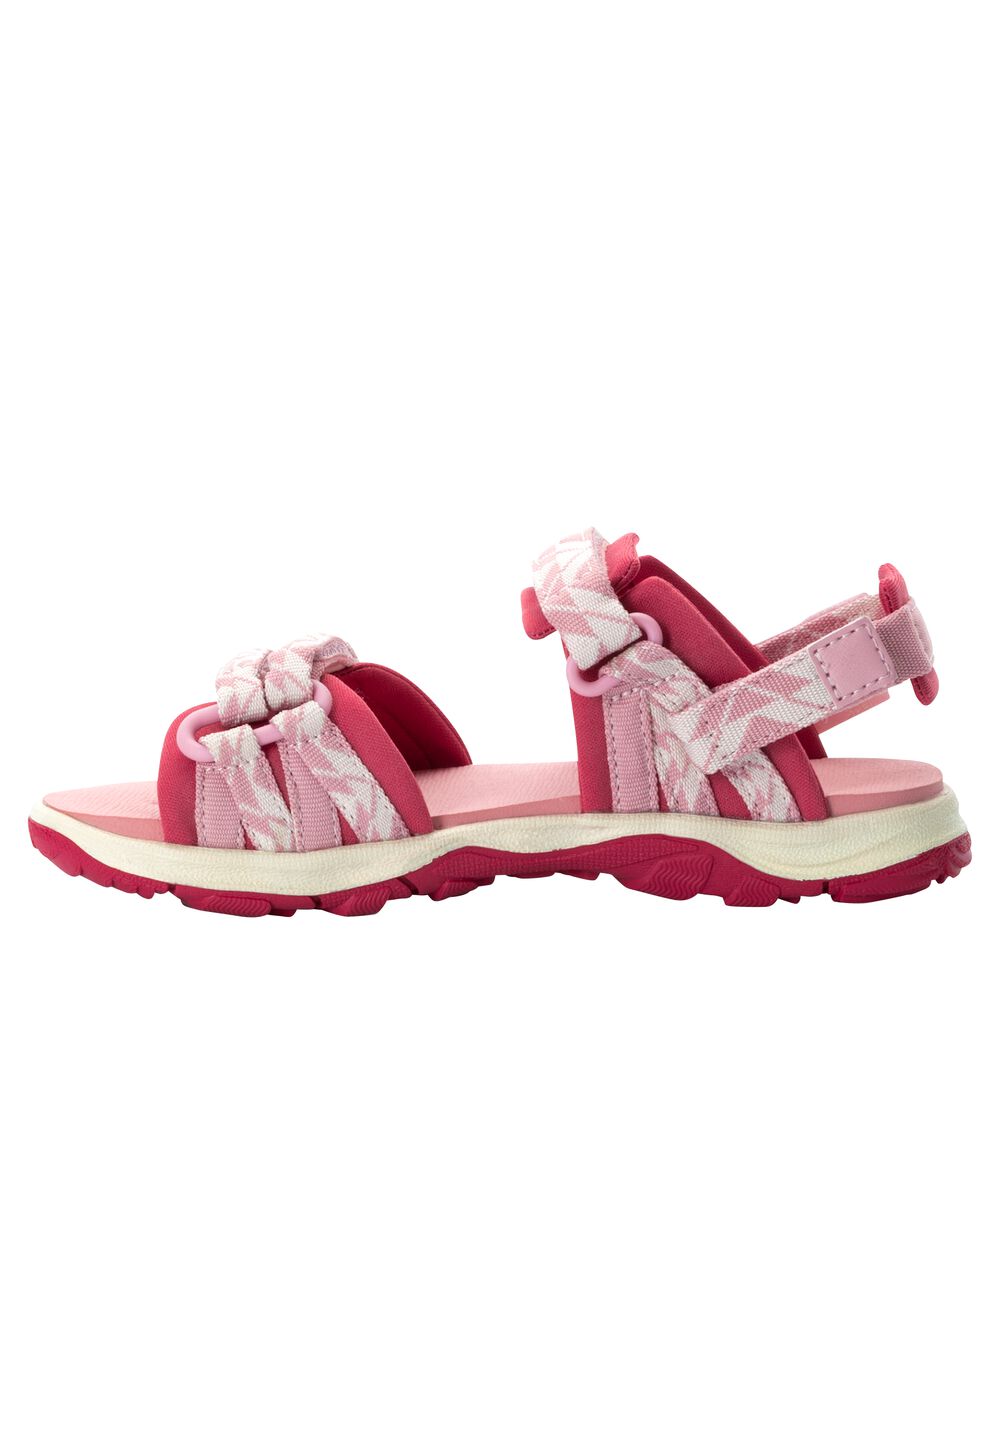 Jack Wolfskin 2 IN 1 Sandal Kids Kinderen sandalen 29 soft pink soft pink